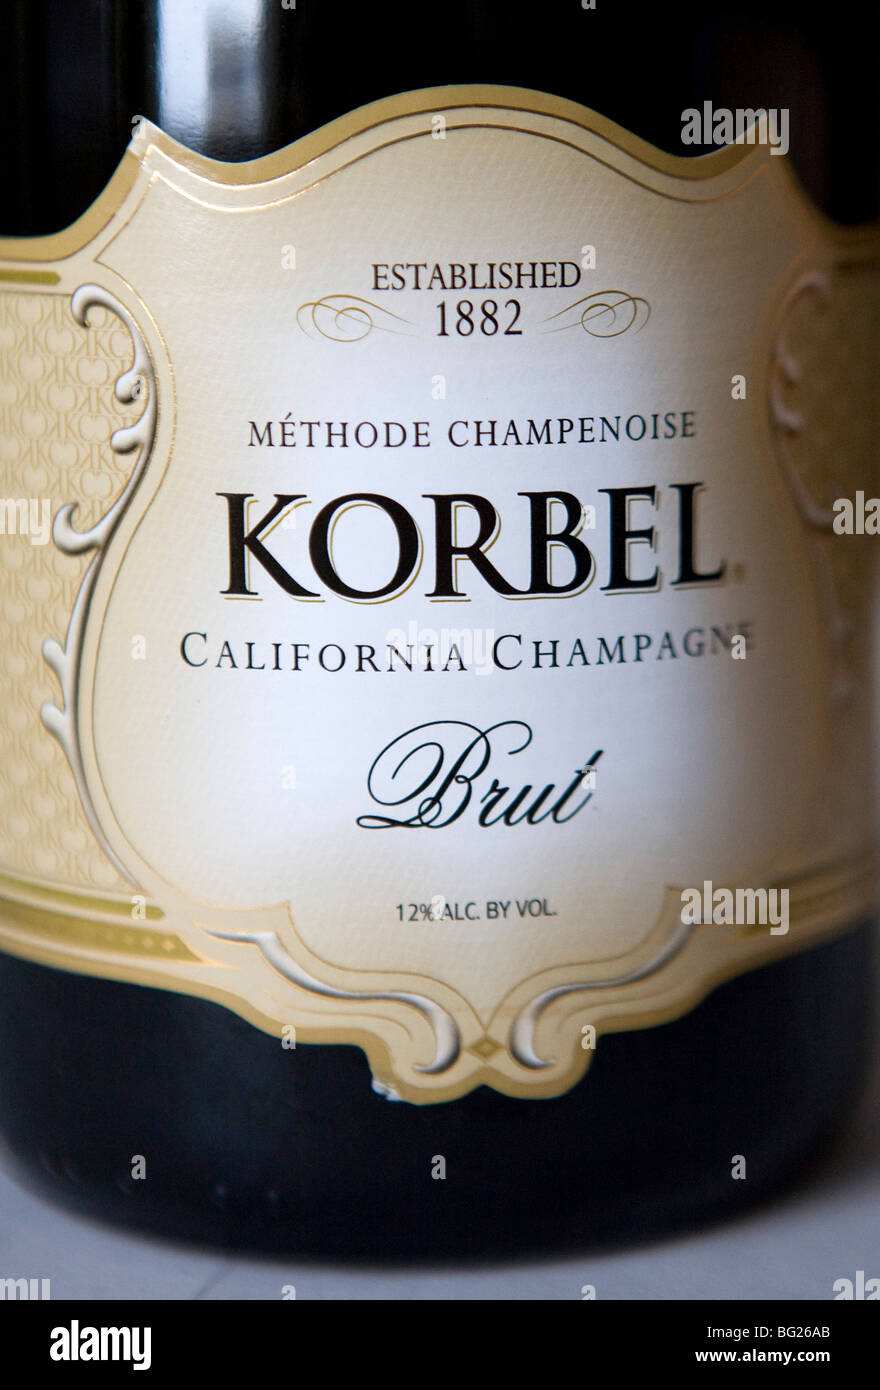 Bottiglie di champagne in California. california vino spumante maker sono attualmente gli unici produttori nel mondo al di fuori della regione di champagne di Francia che può chiamare il loro prodotto "champagne" fintanto che essi includono la posizione in cui è stato prodotto sull'etichetta Foto Stock